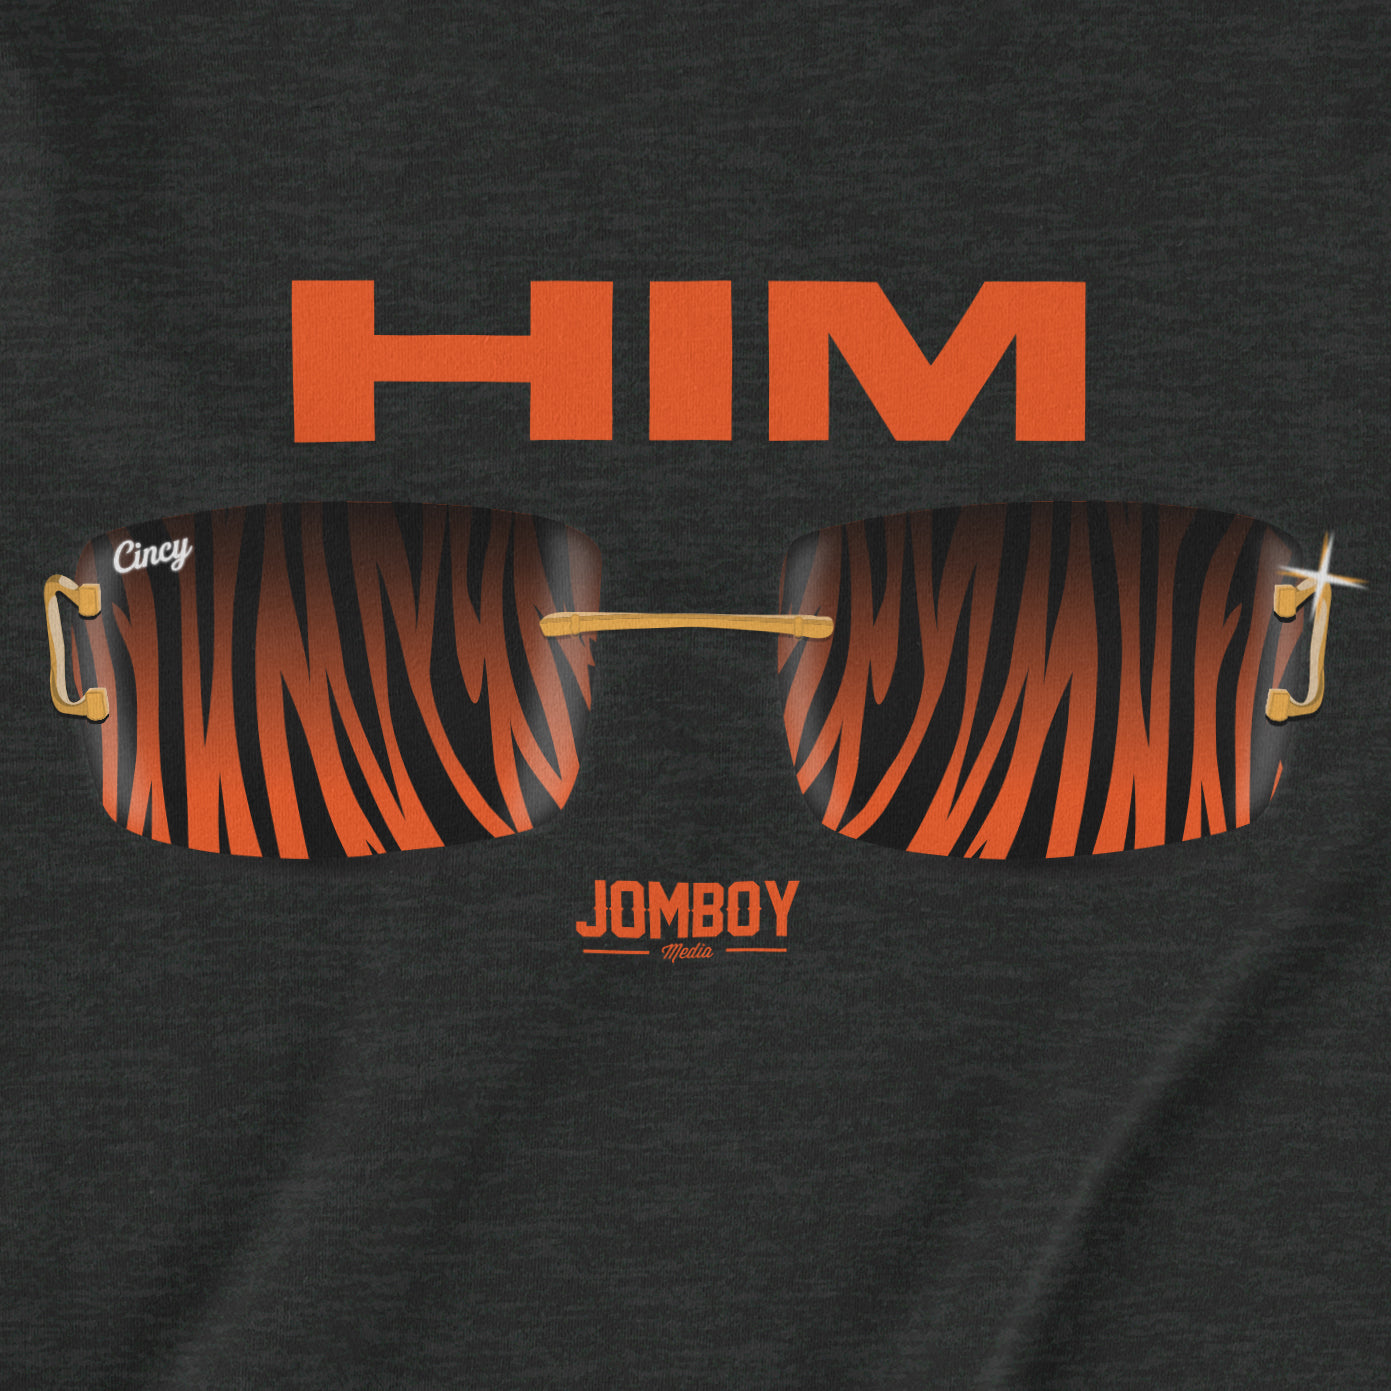 HIM | T-Shirt